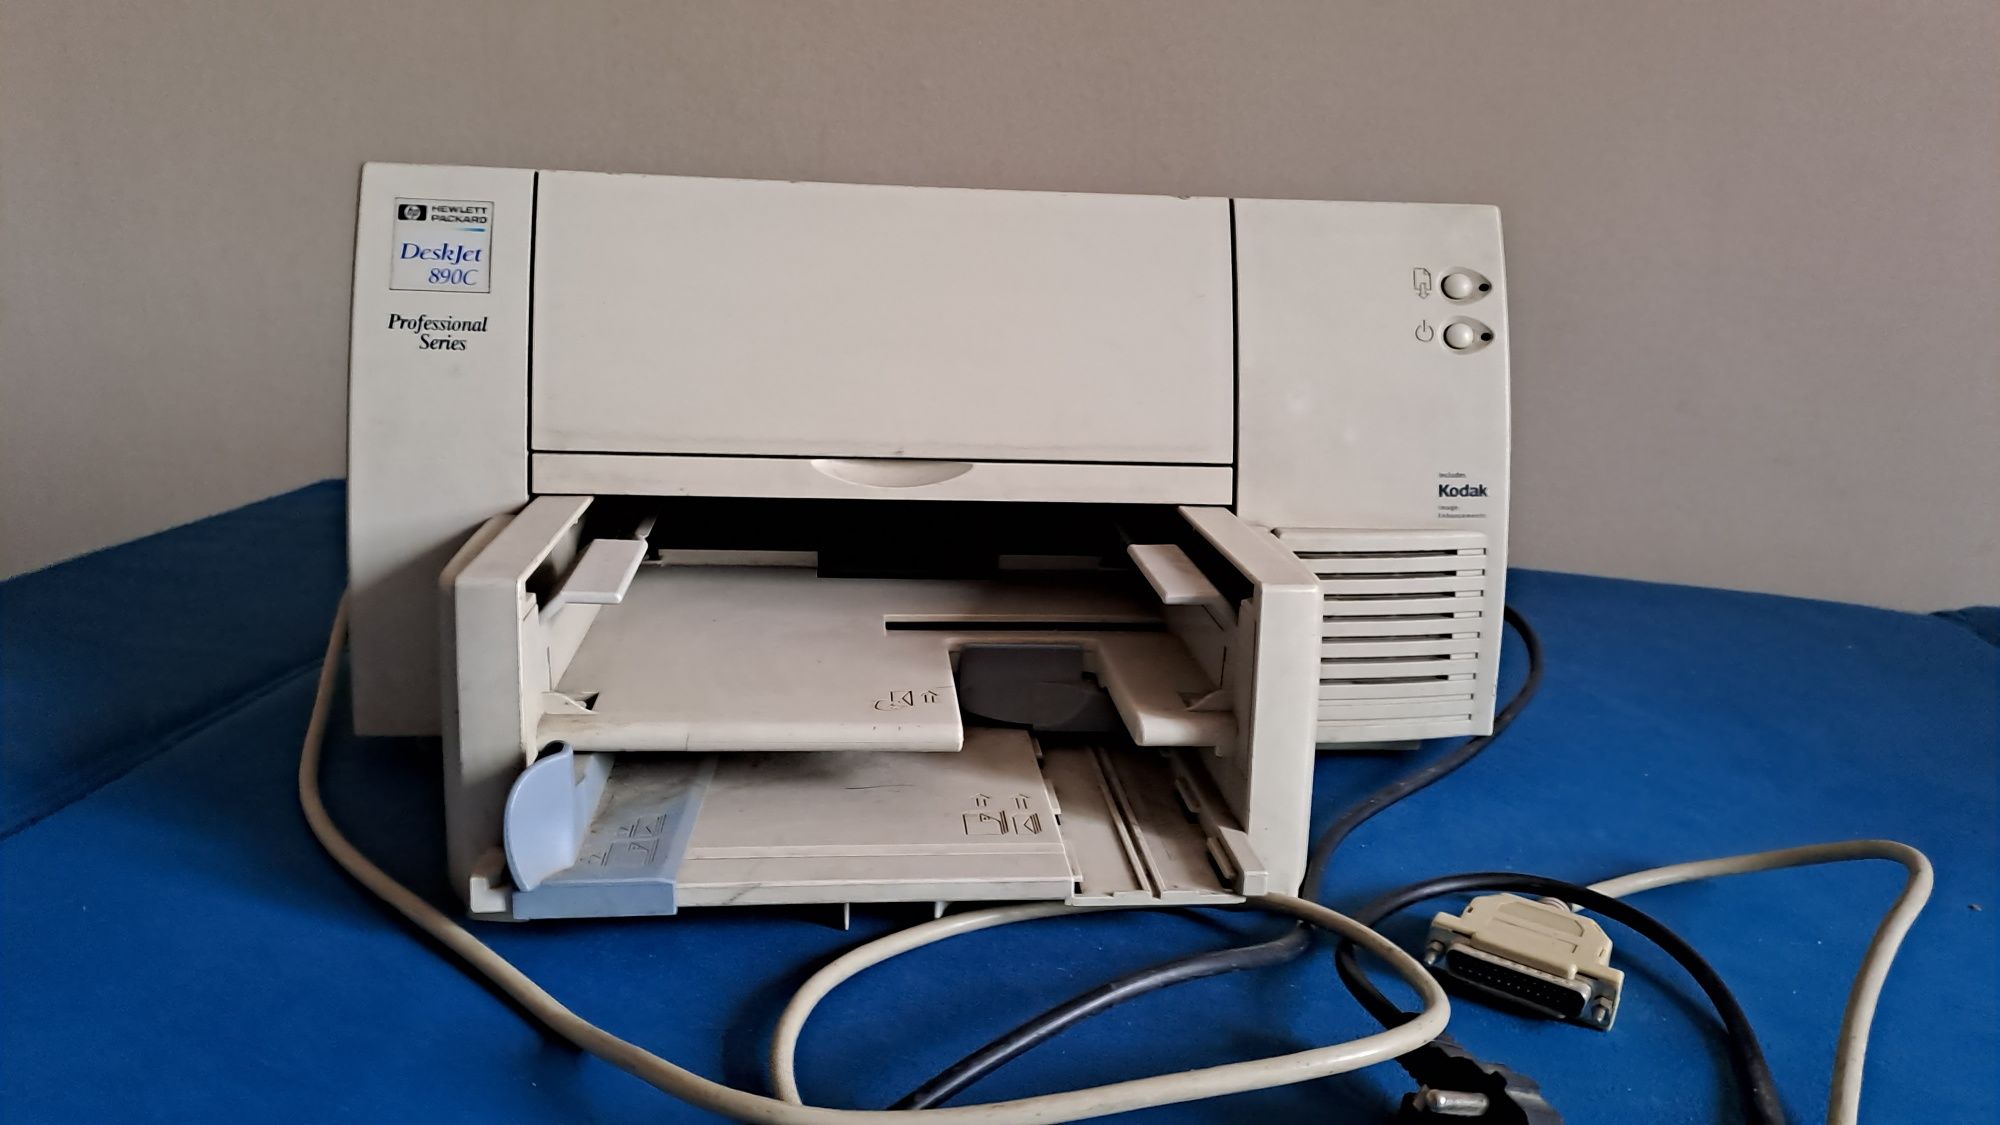 Струйный принтер HP DeskJet 890C Professional Series